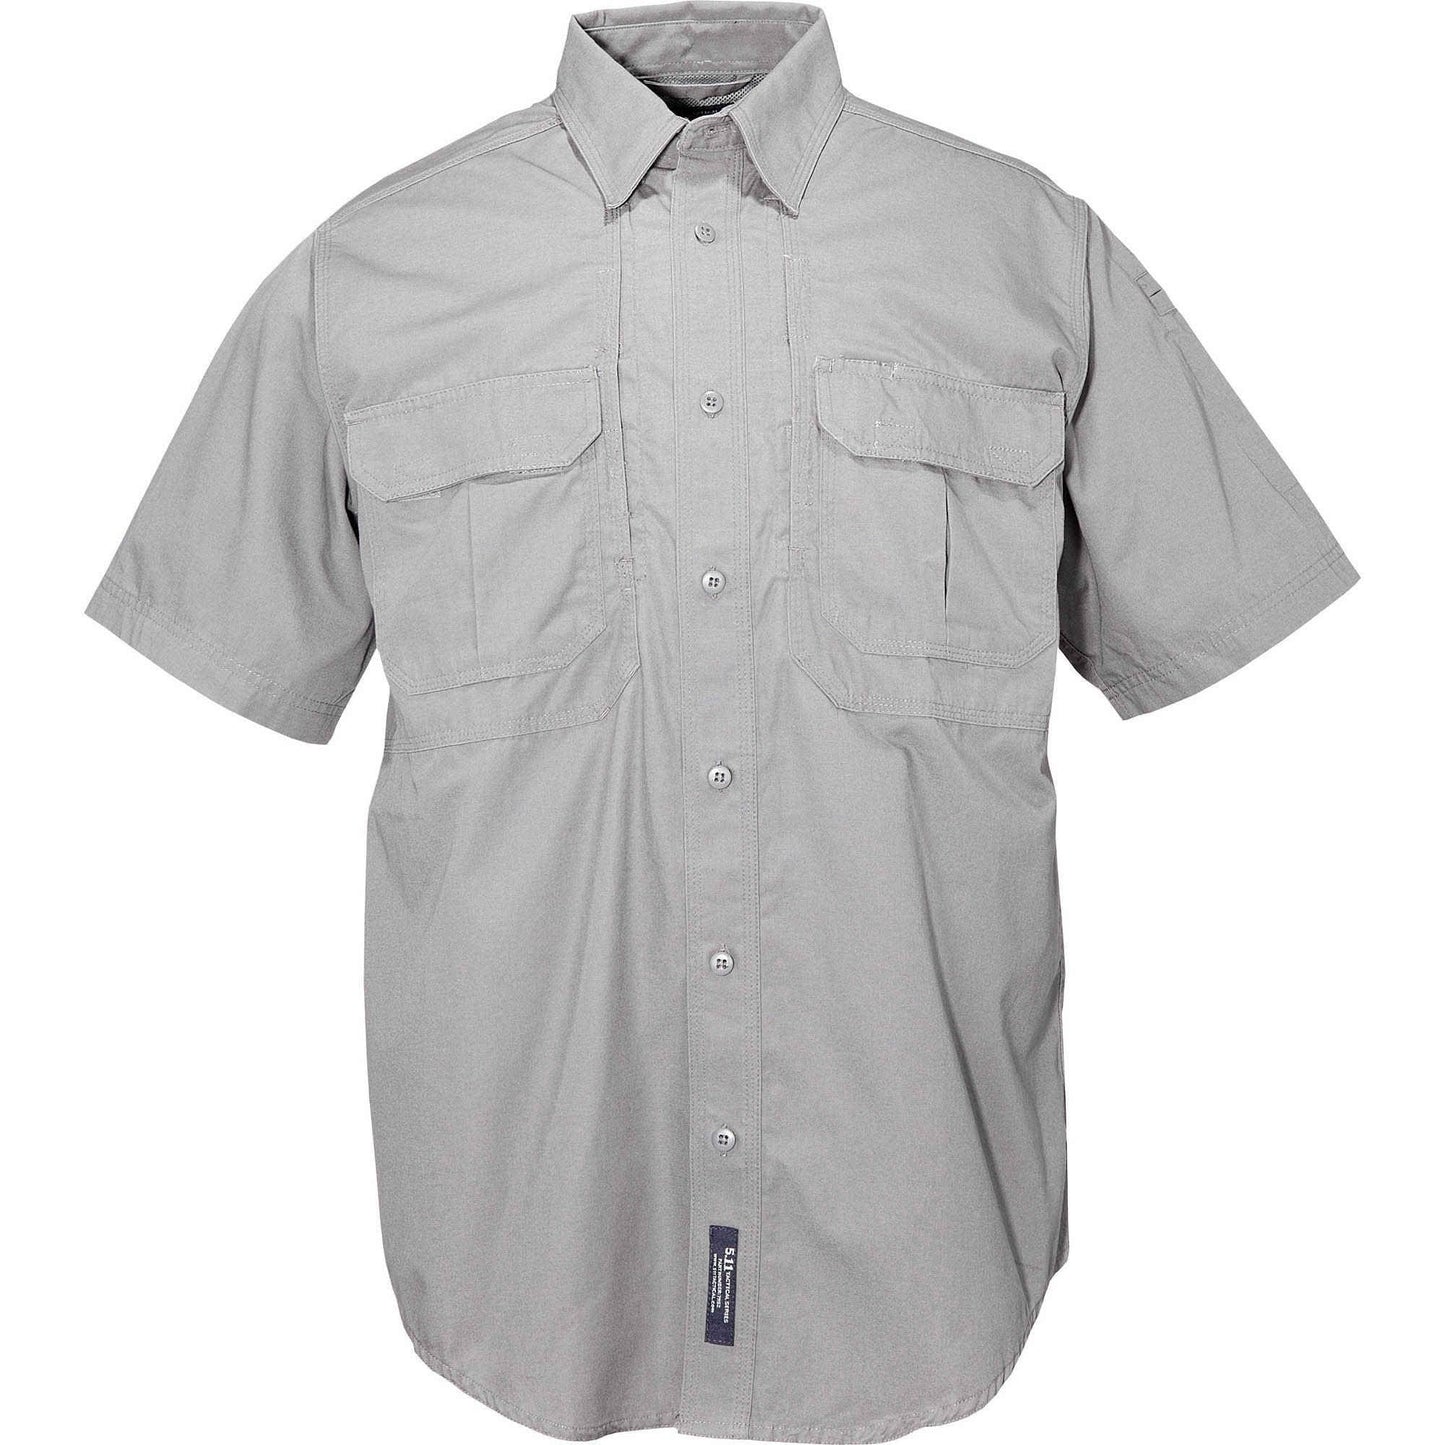 5.11 Tactical Men's Short Sleeve Tactical Shirt Grey Tactical Distributors Ltd New Zealand